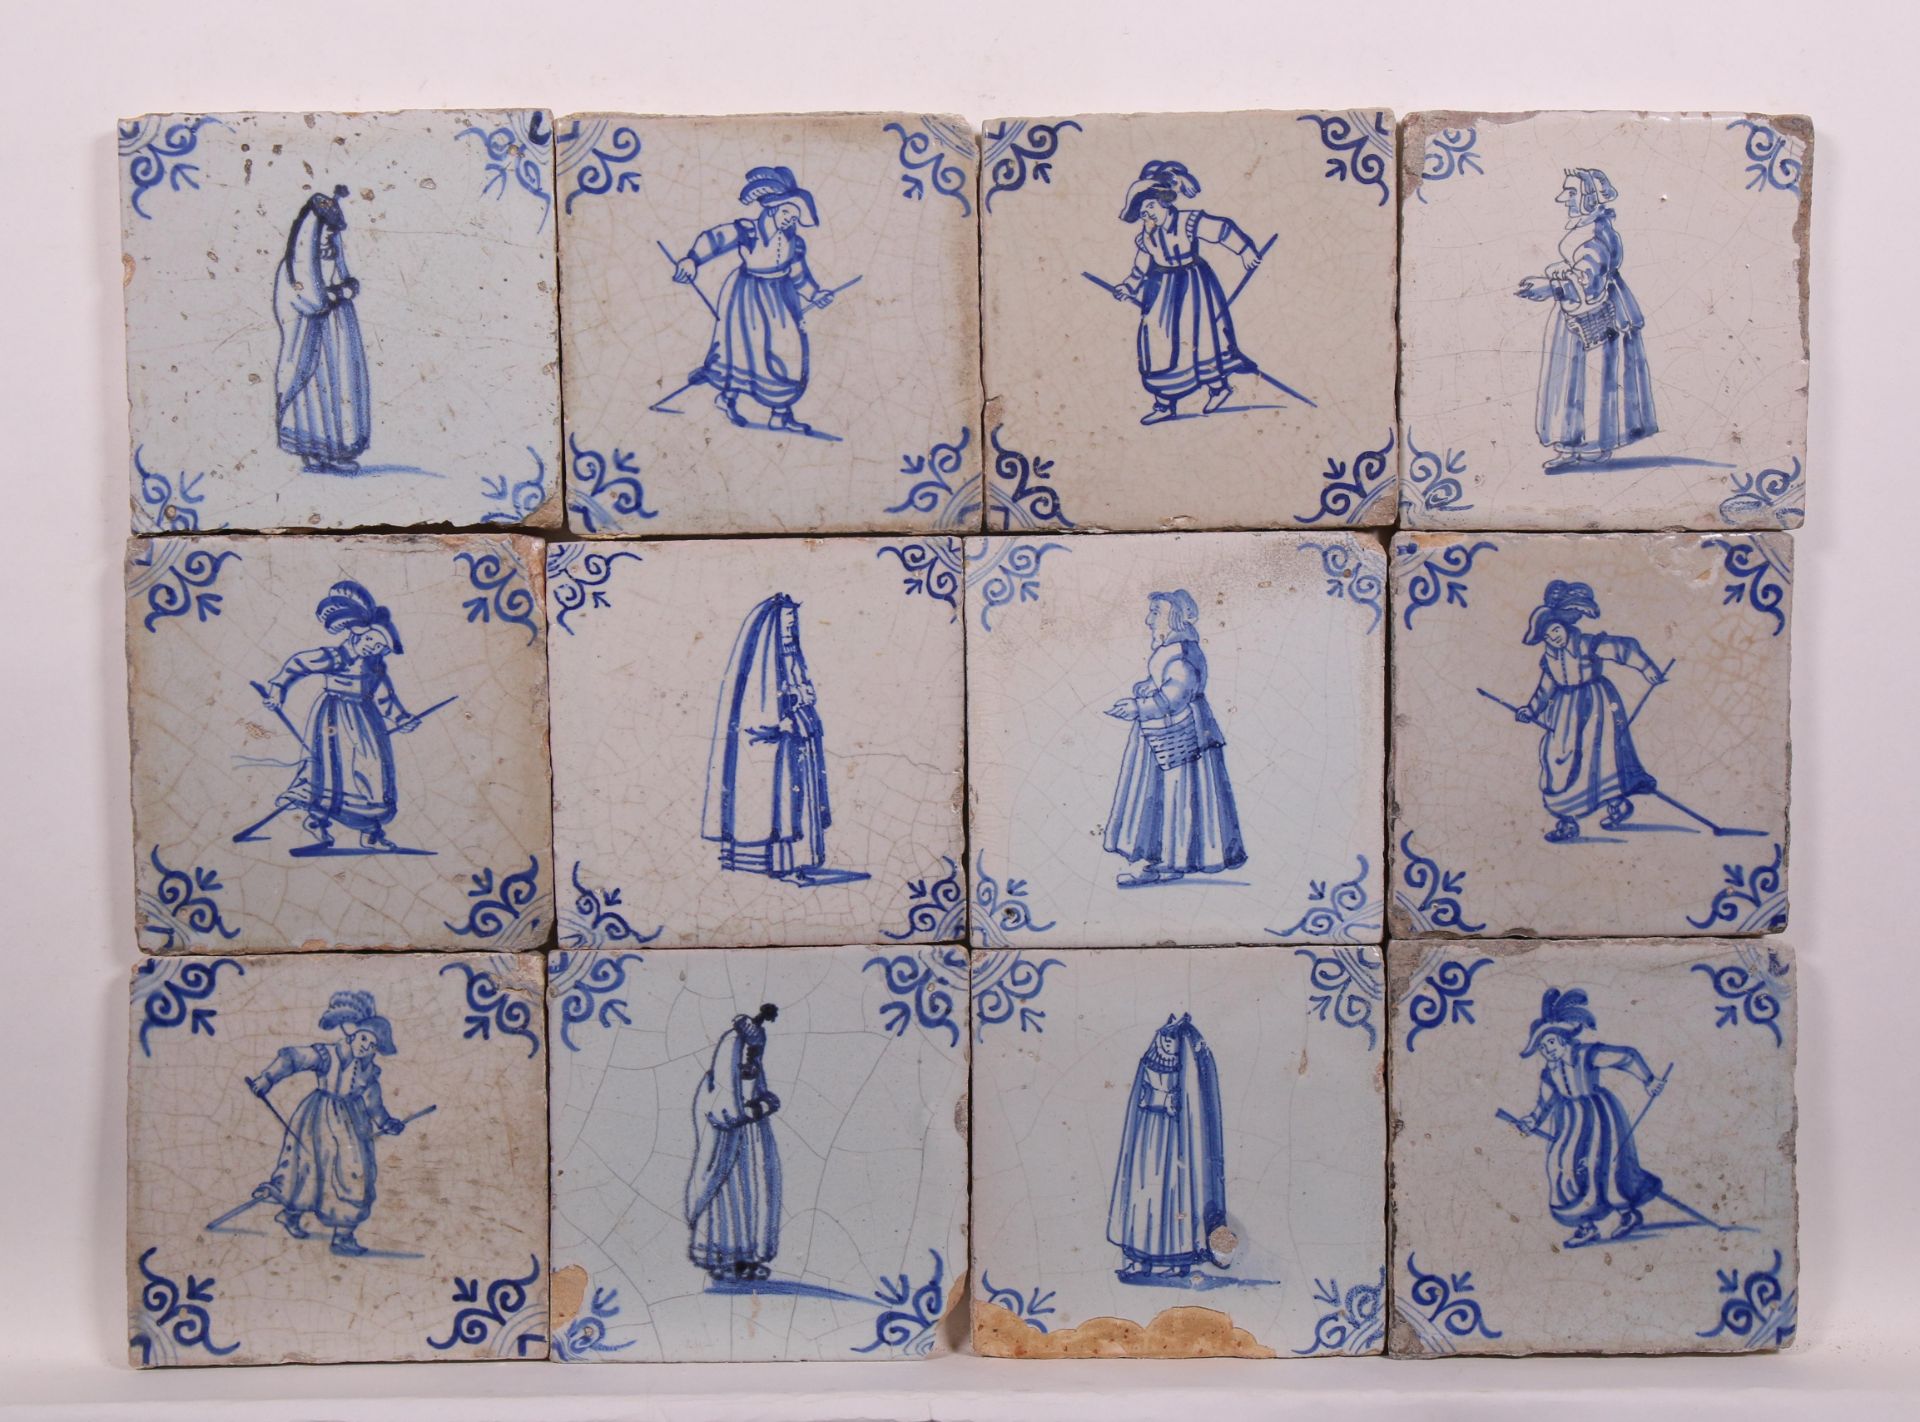 Eenentwintig blauw aardewerk figuurdecor tegels, ca. 1650; - Image 2 of 2